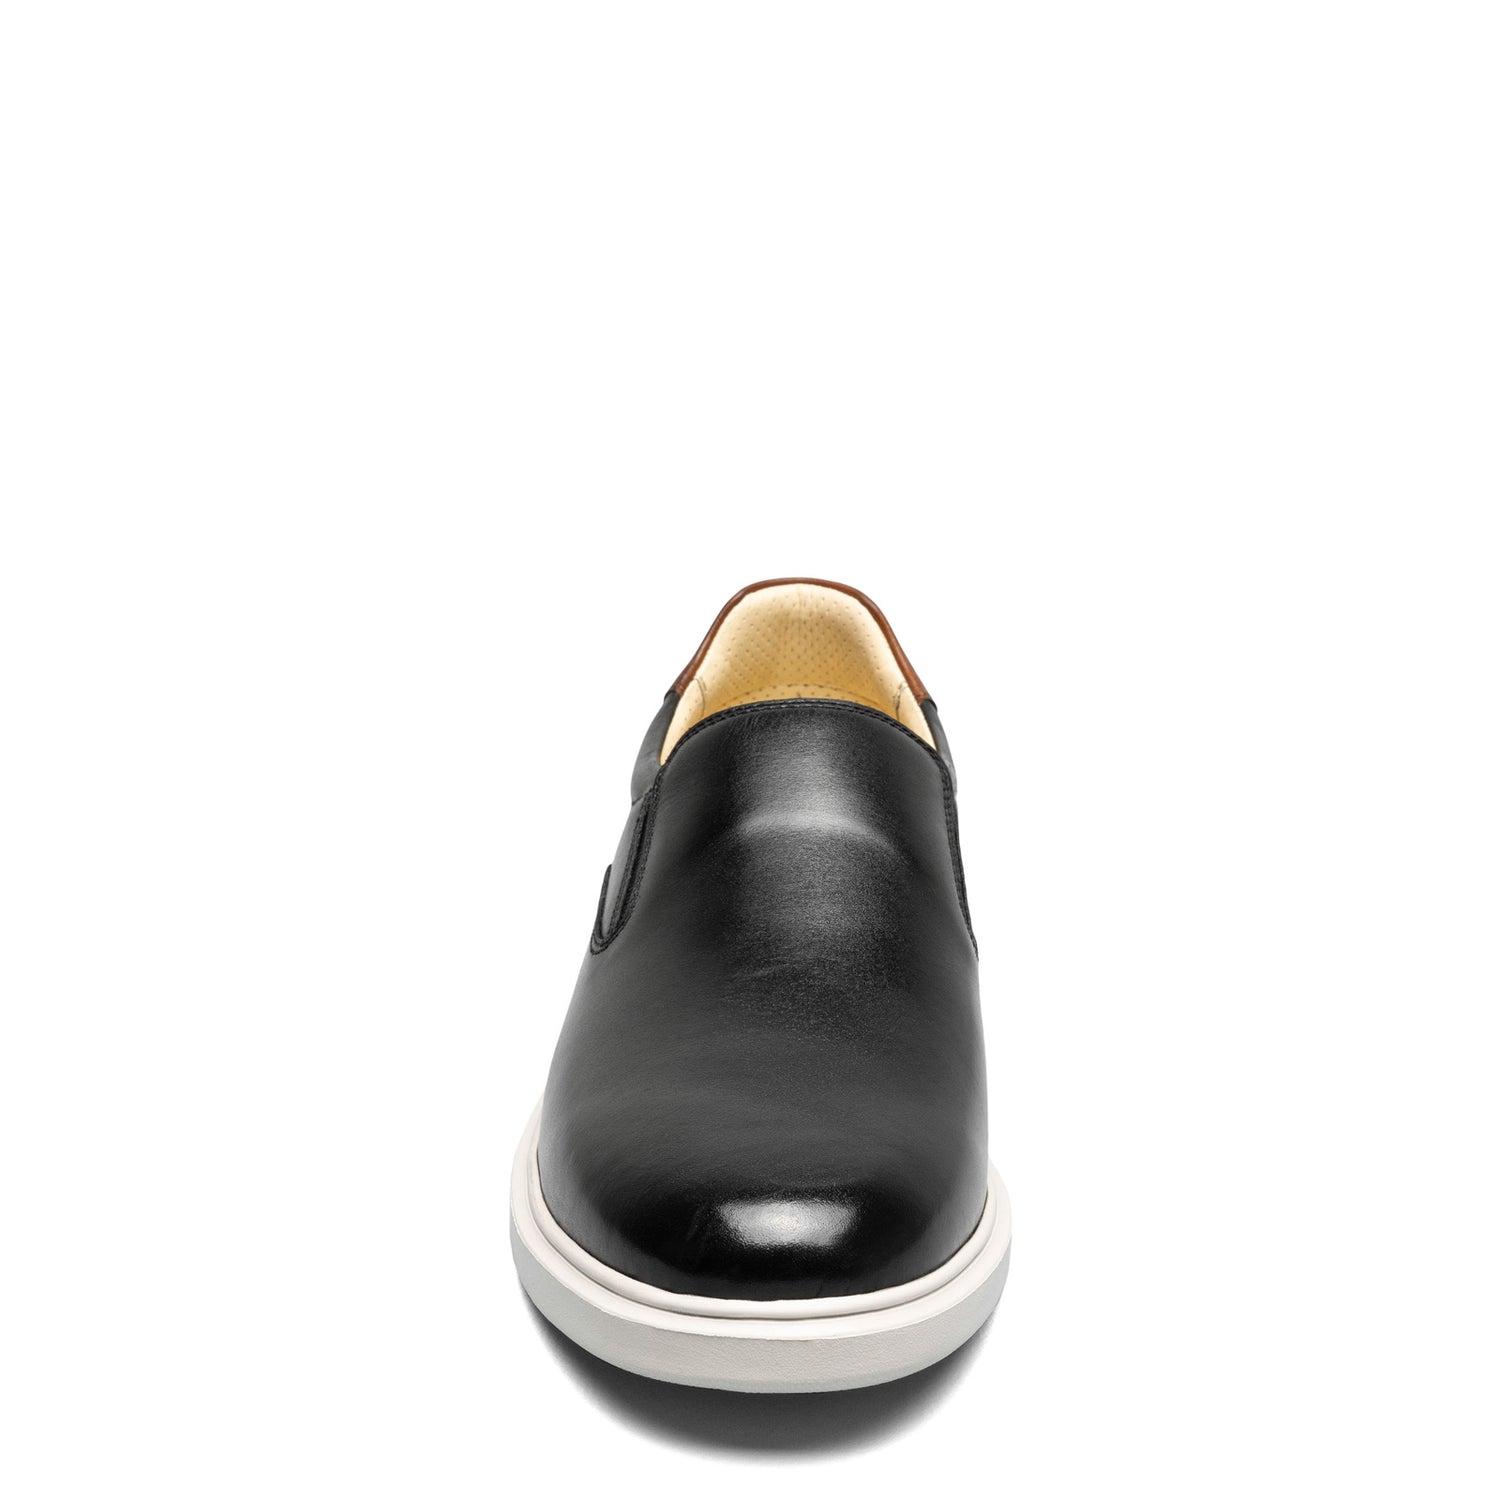 Florsheim Crossover LTT Men's Casual Shoes - Shippy Shoes